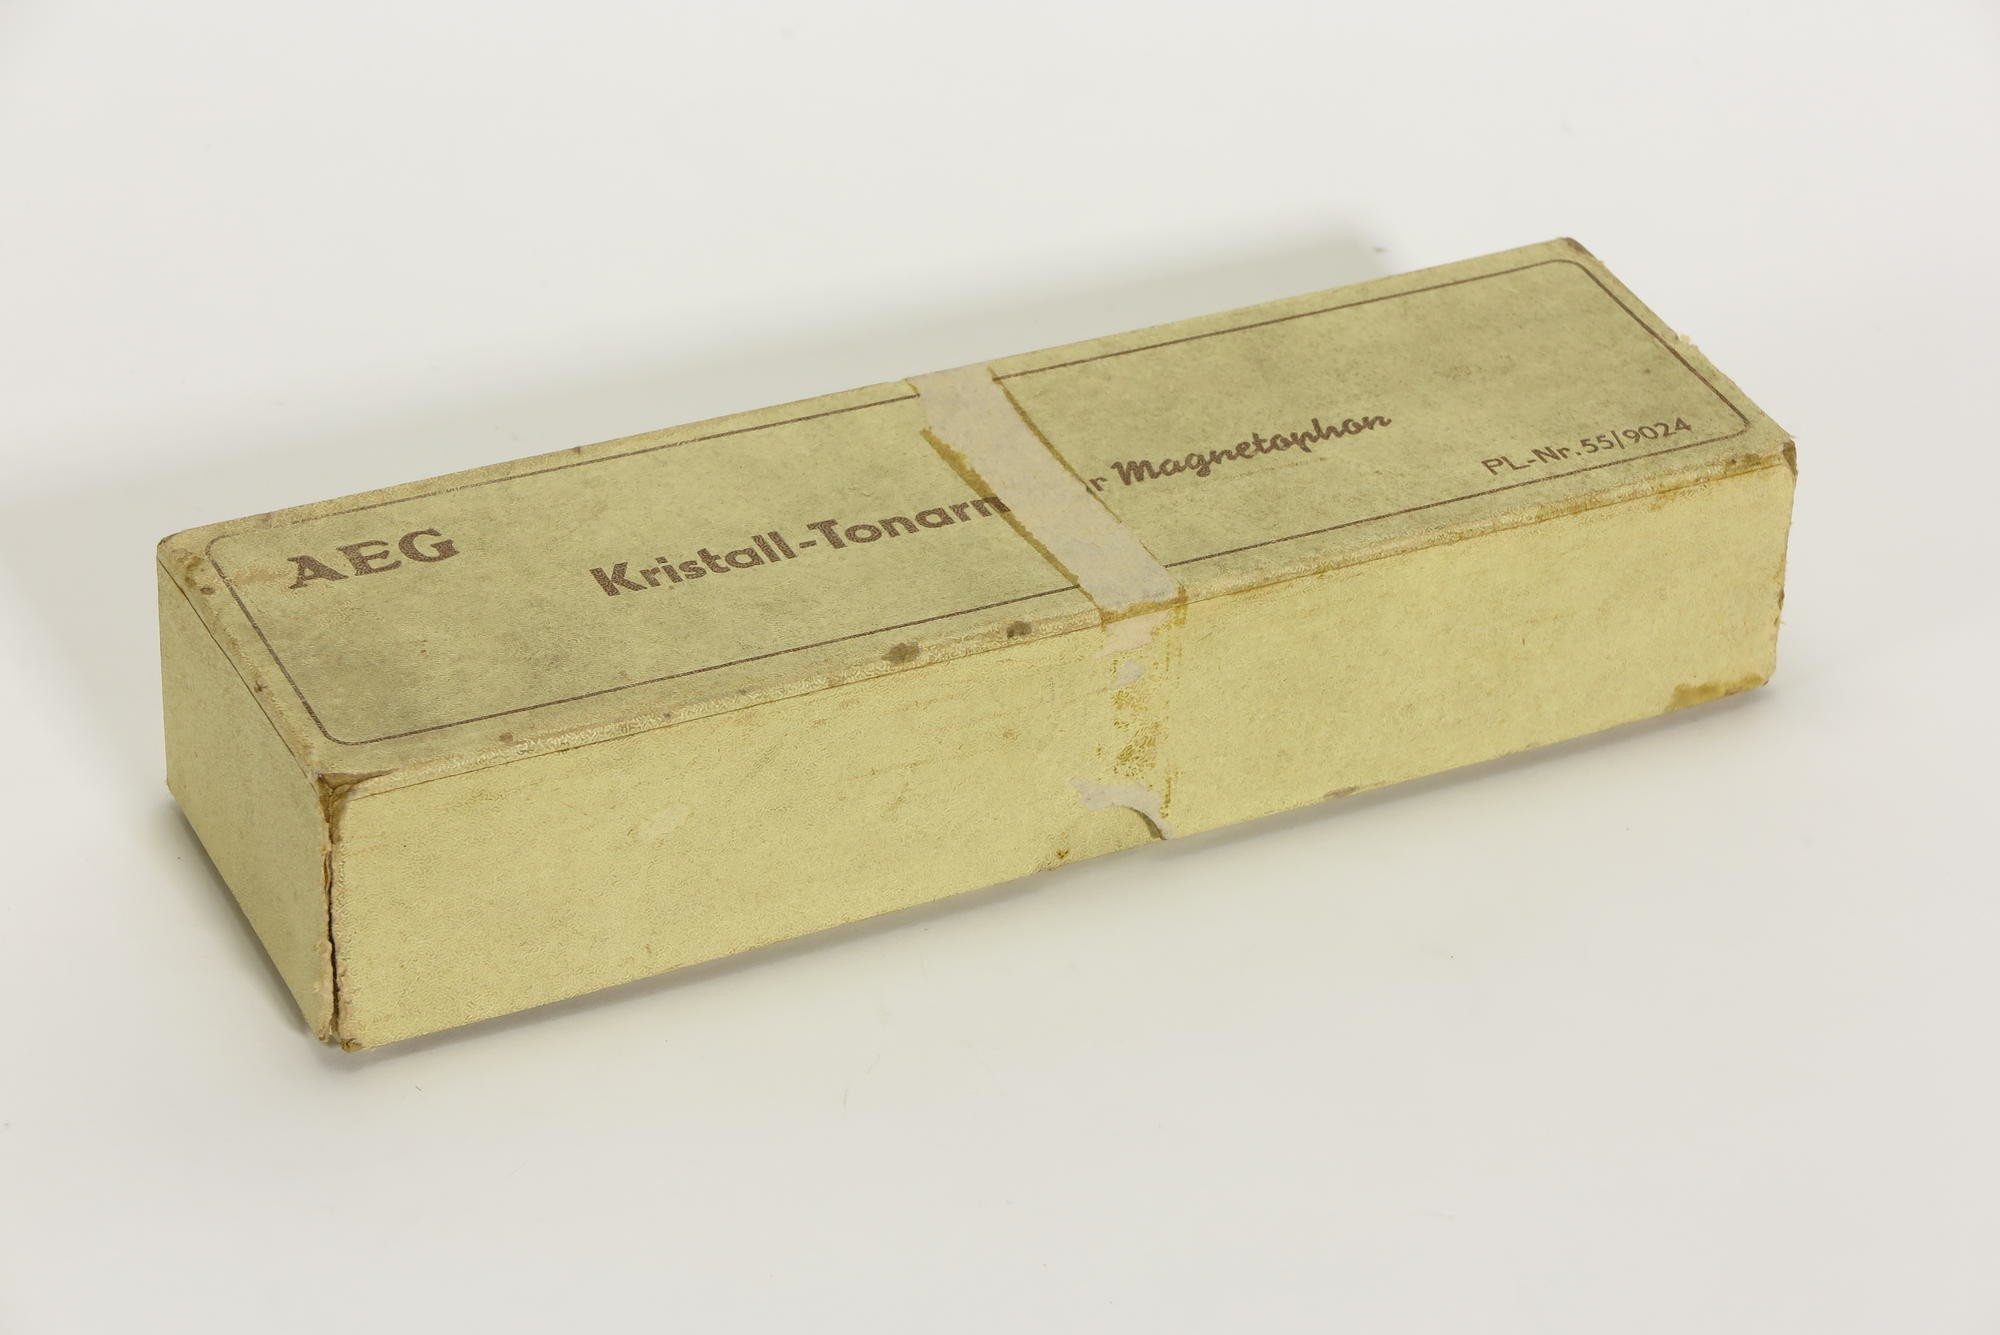 Verpackungskarton, Zubehör zu Kristall-Tonarm von Plattenspieler-Zusatz für AEG Magnetophon KL15 und KL15D (Stiftung Deutsches Technikmuseum Berlin CC0)